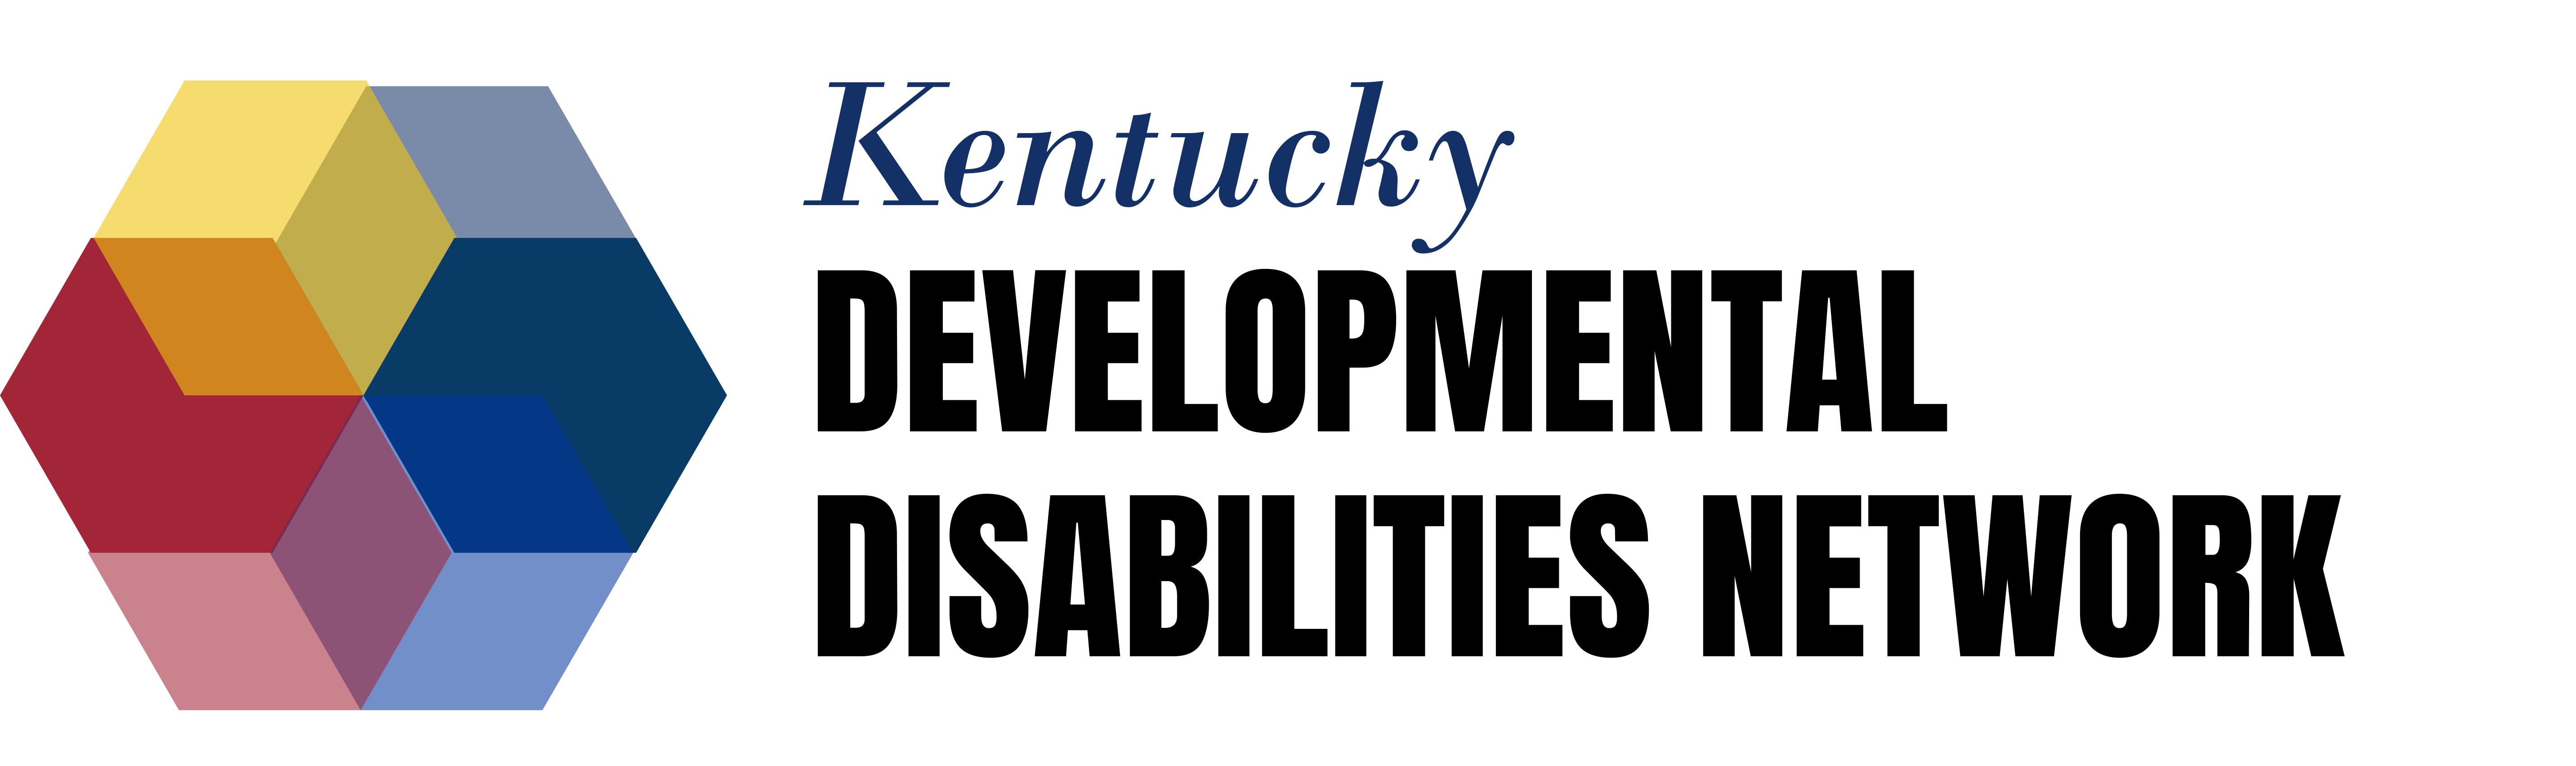 Kentucky Developmental Disabilities Network Logo